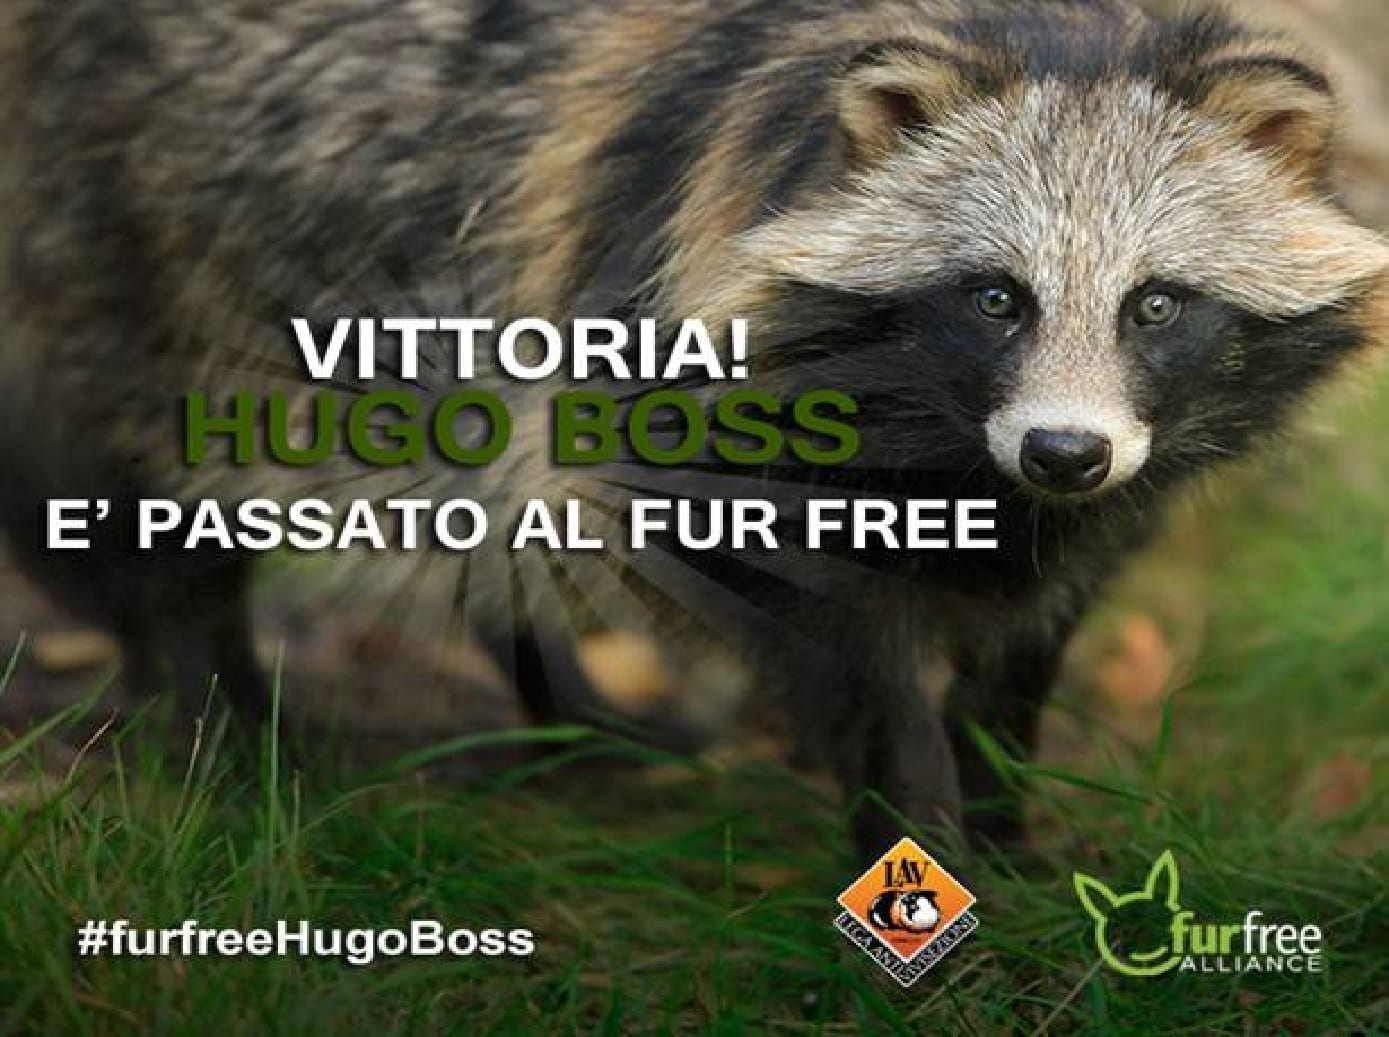 Hugo Boss si converte al ‘fur-free’ e dice stop all’utilizzo di pellicce 